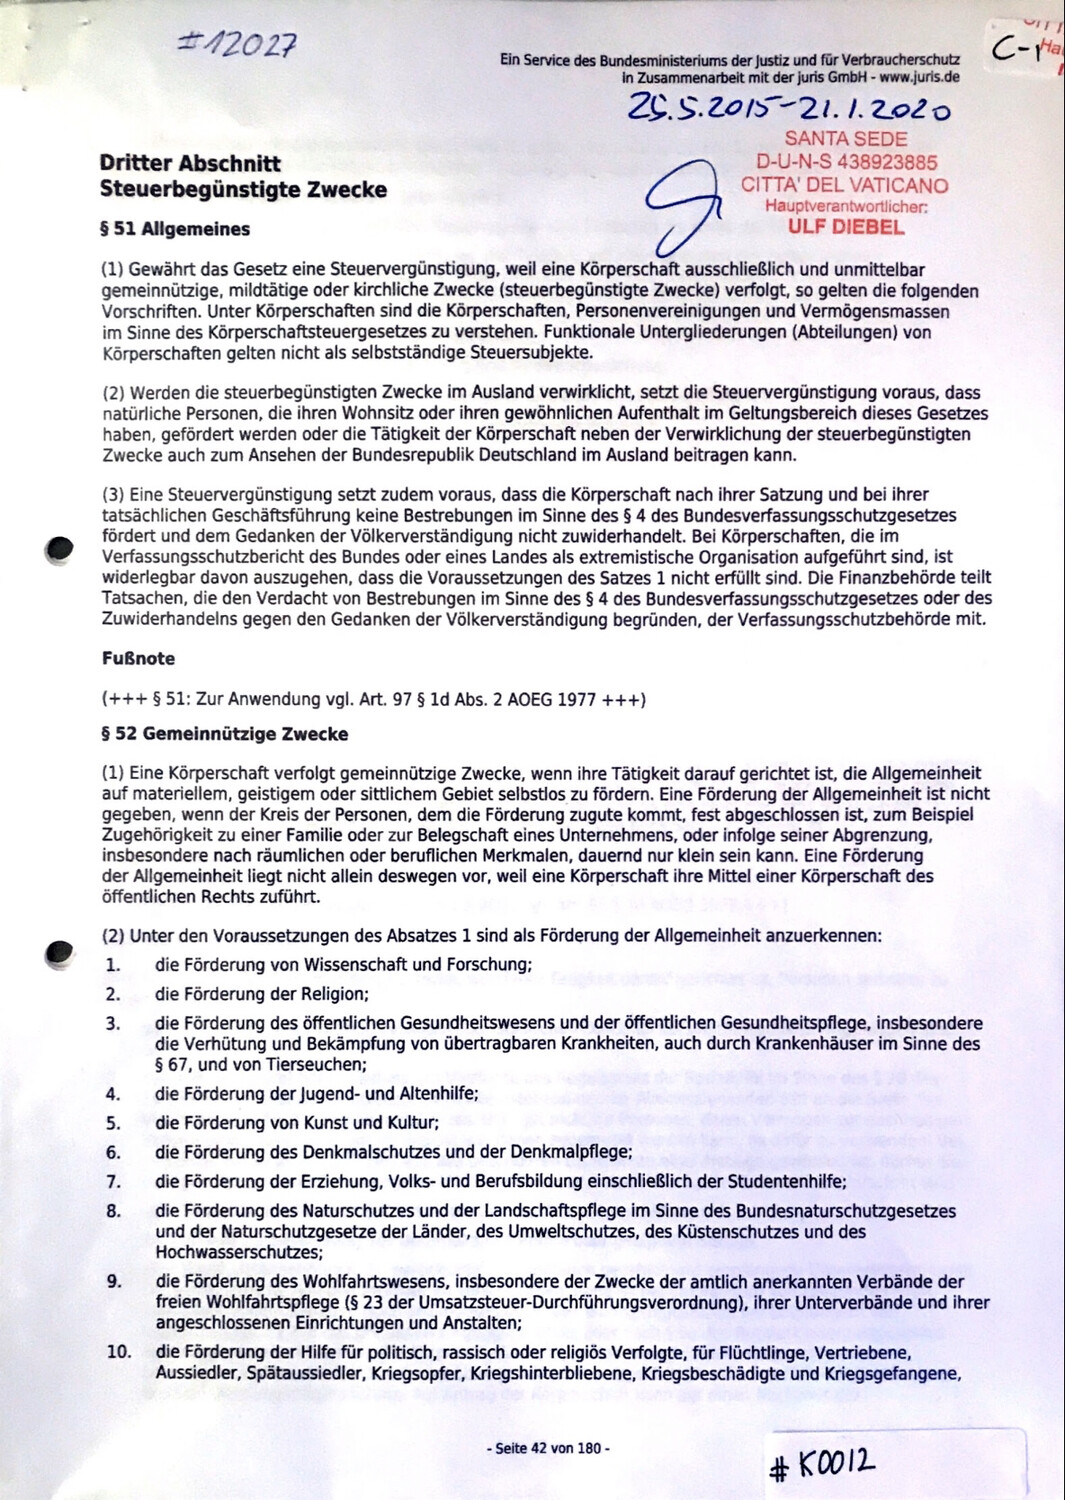 #K0012 l Dritter Abschnitt - Steuerbegünstige Zwecke l Bundesministerium der Justiz und für Verbraucherschutz in Zusammenarbeit mit der juris GmbH - www.juris.de